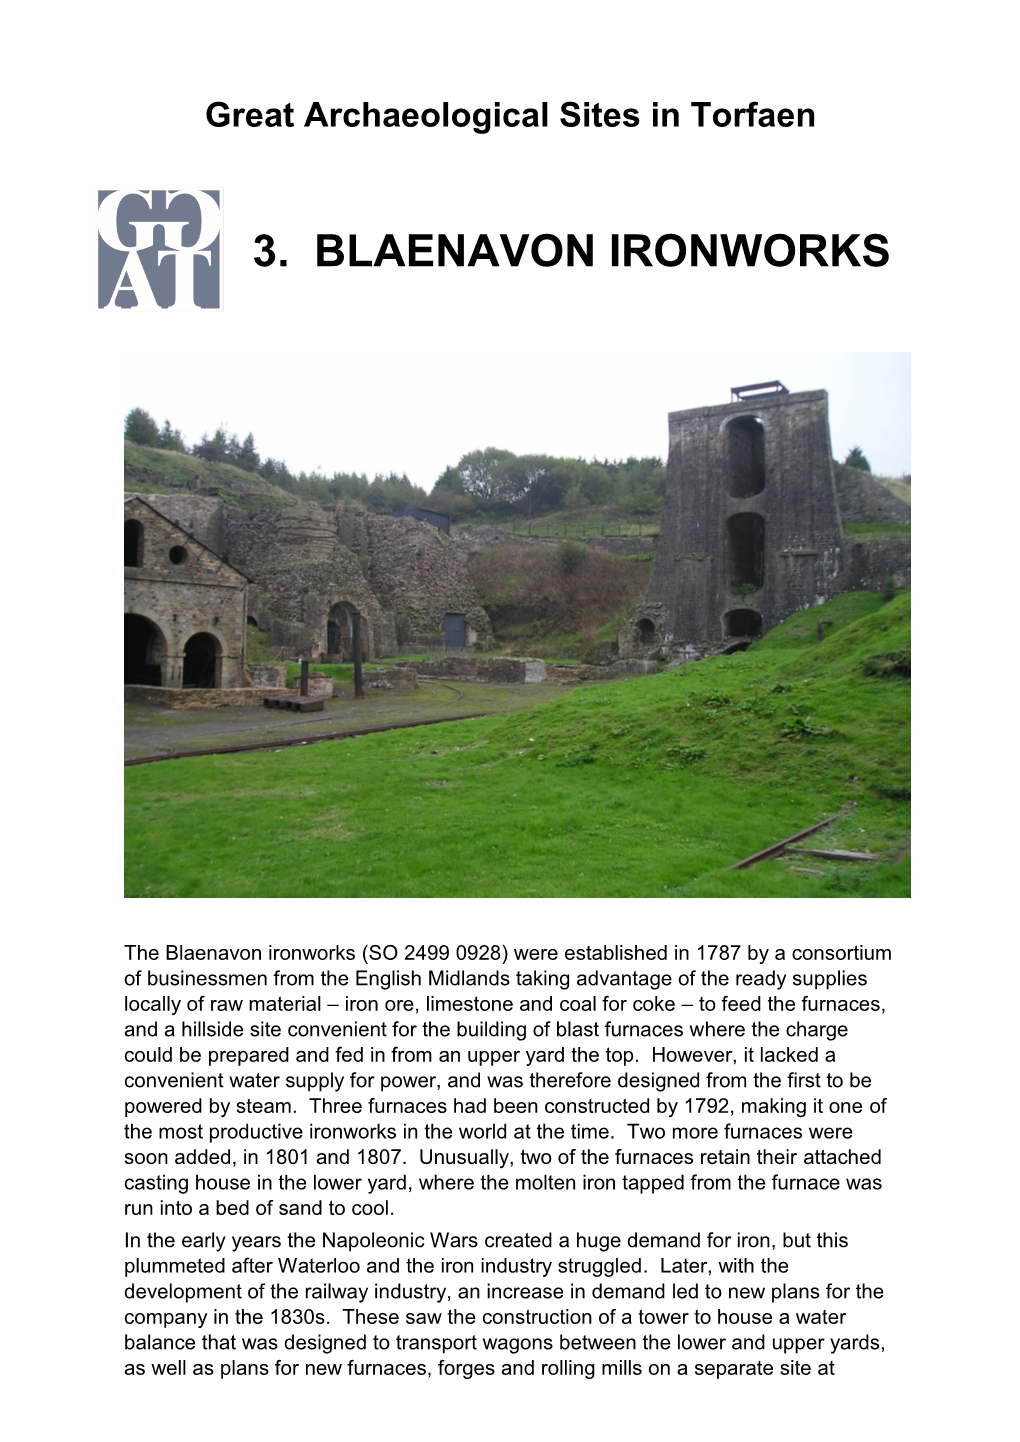 3. Blaenavon Ironworks